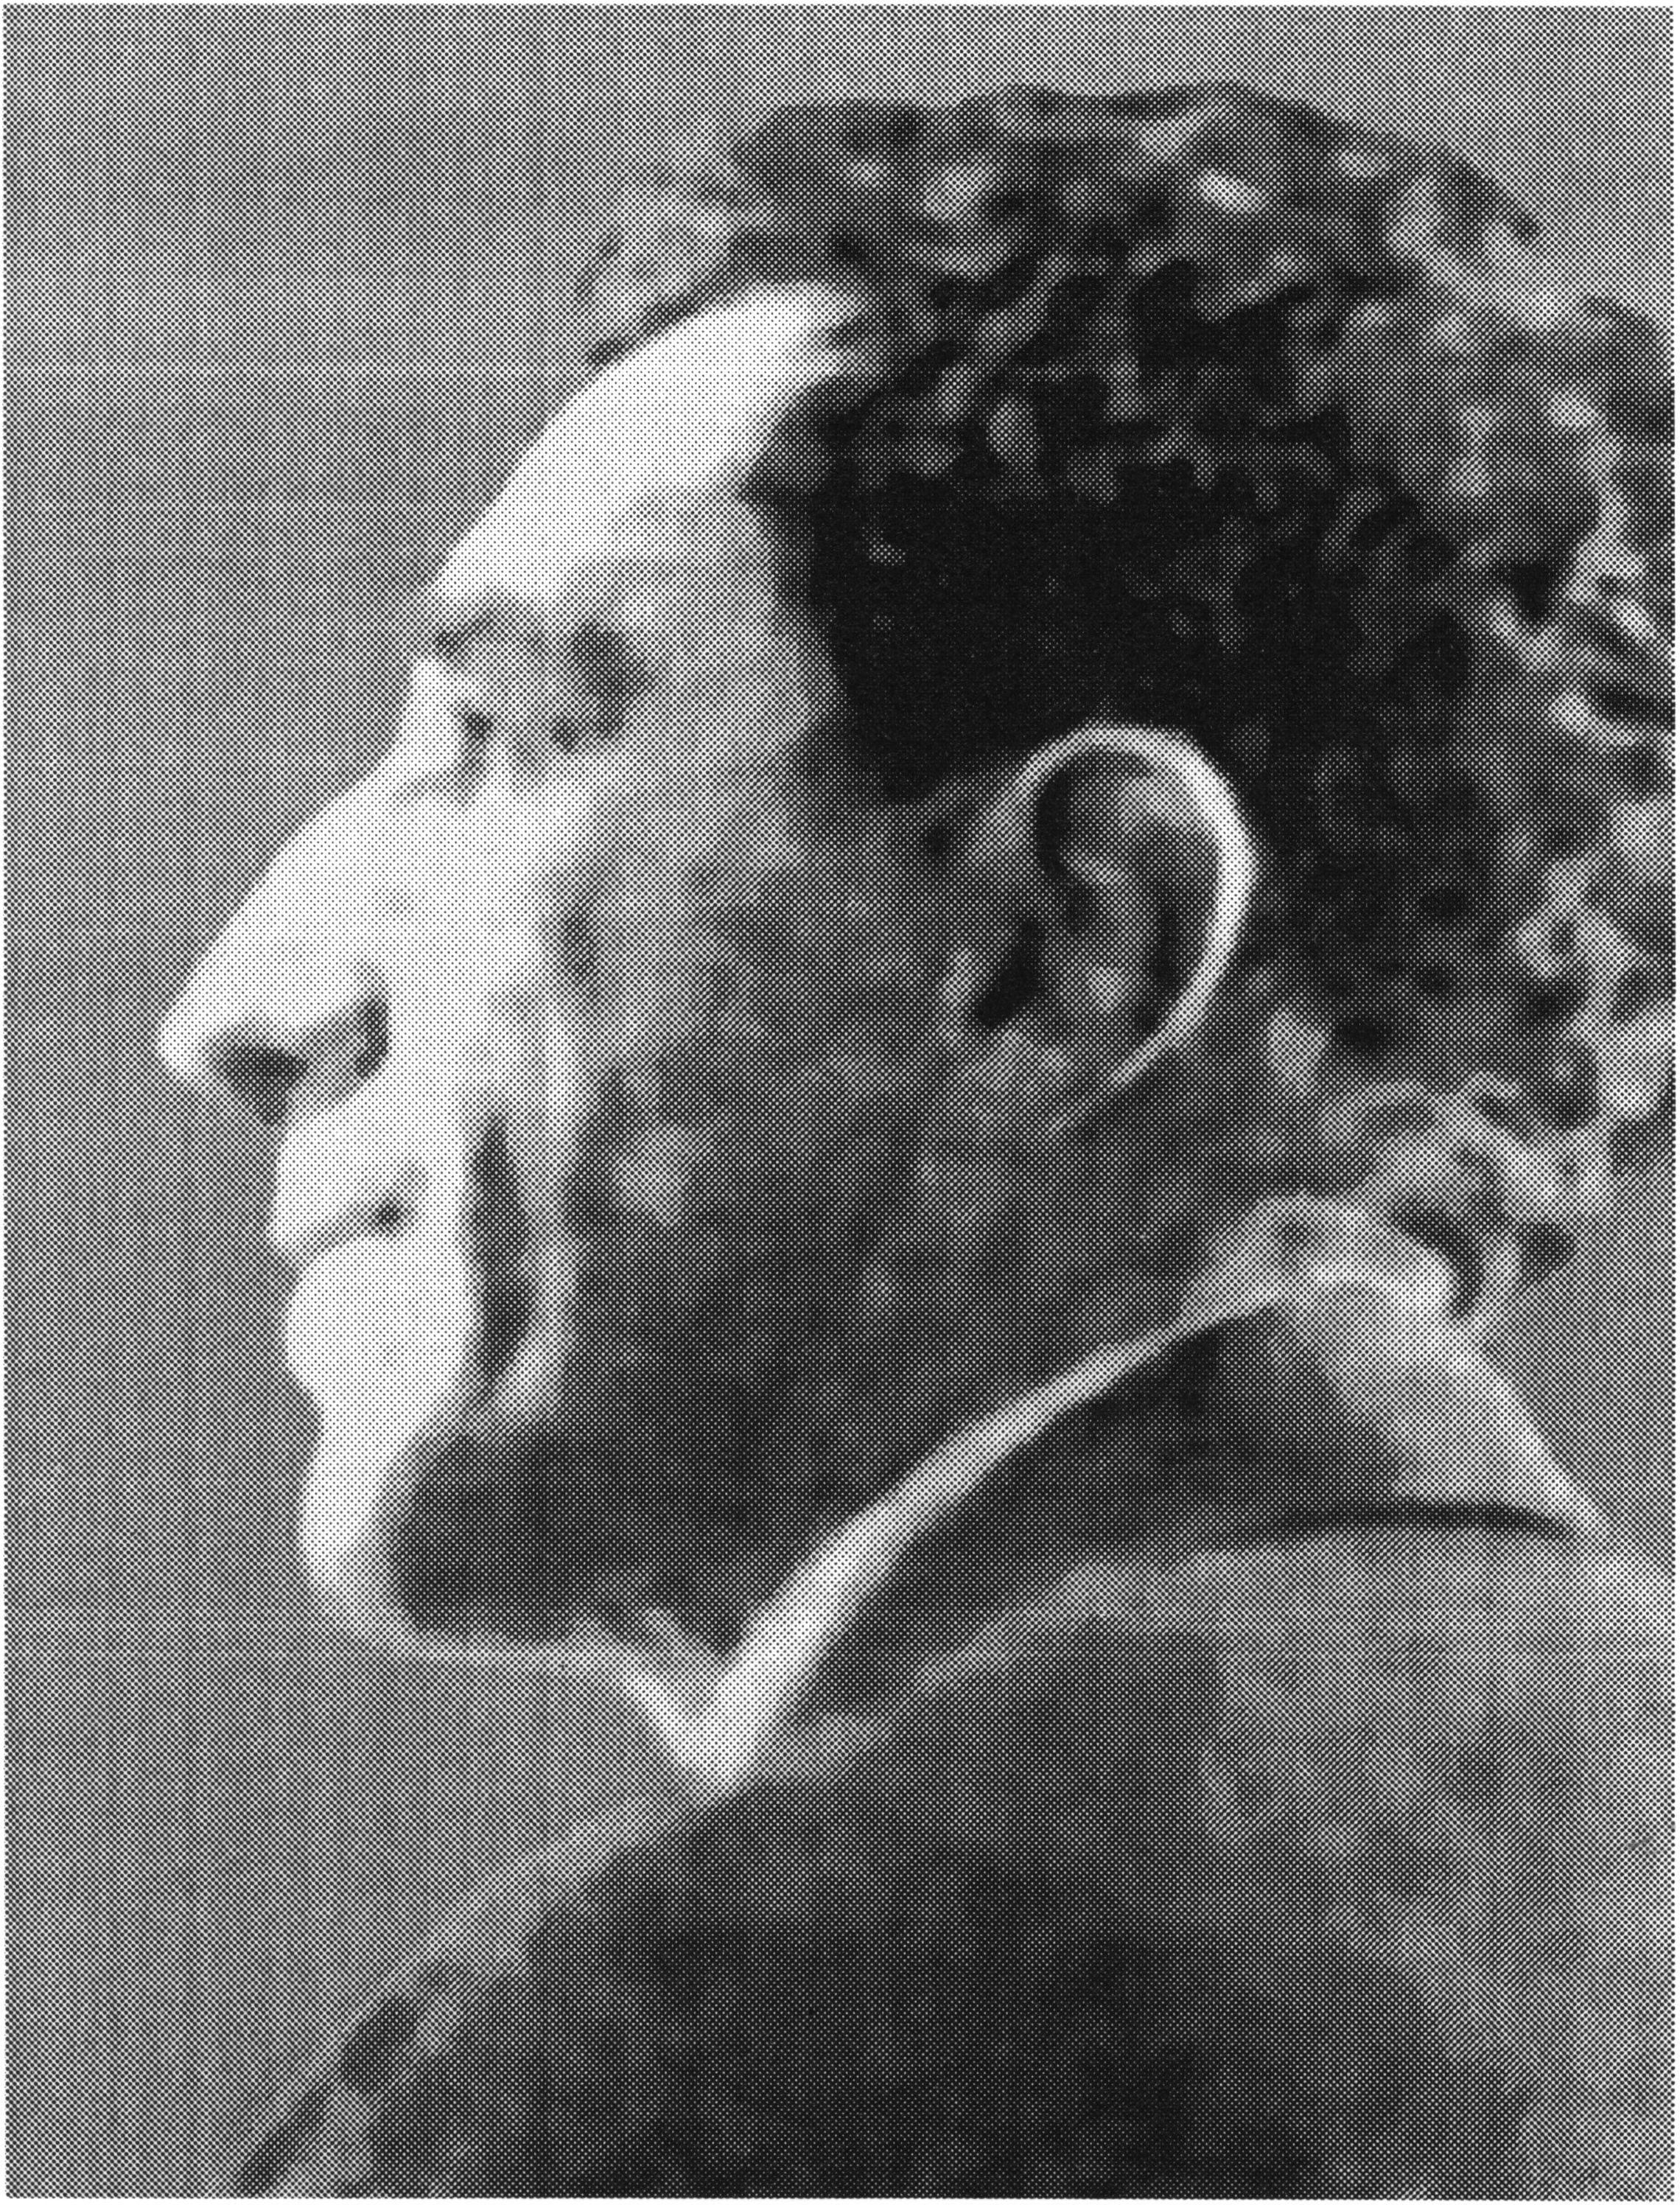 Игорь-Северянин. Белград, 1933 год, фото из еженедельника «Радио»